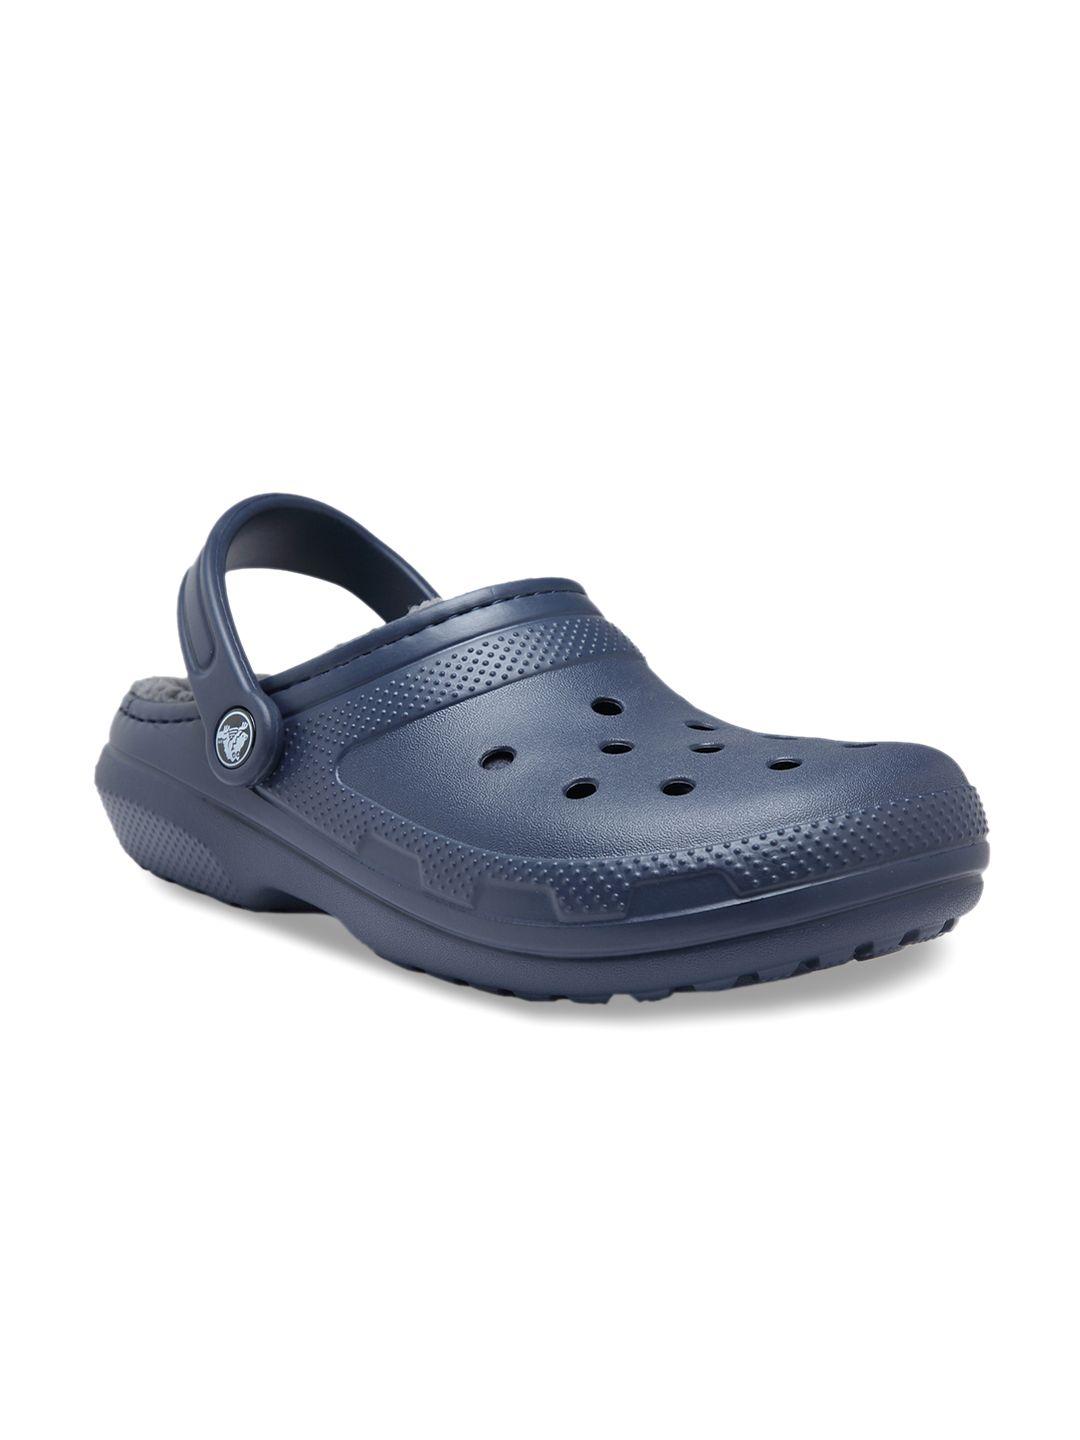 crocs-classic--men-navy-blue-clogs